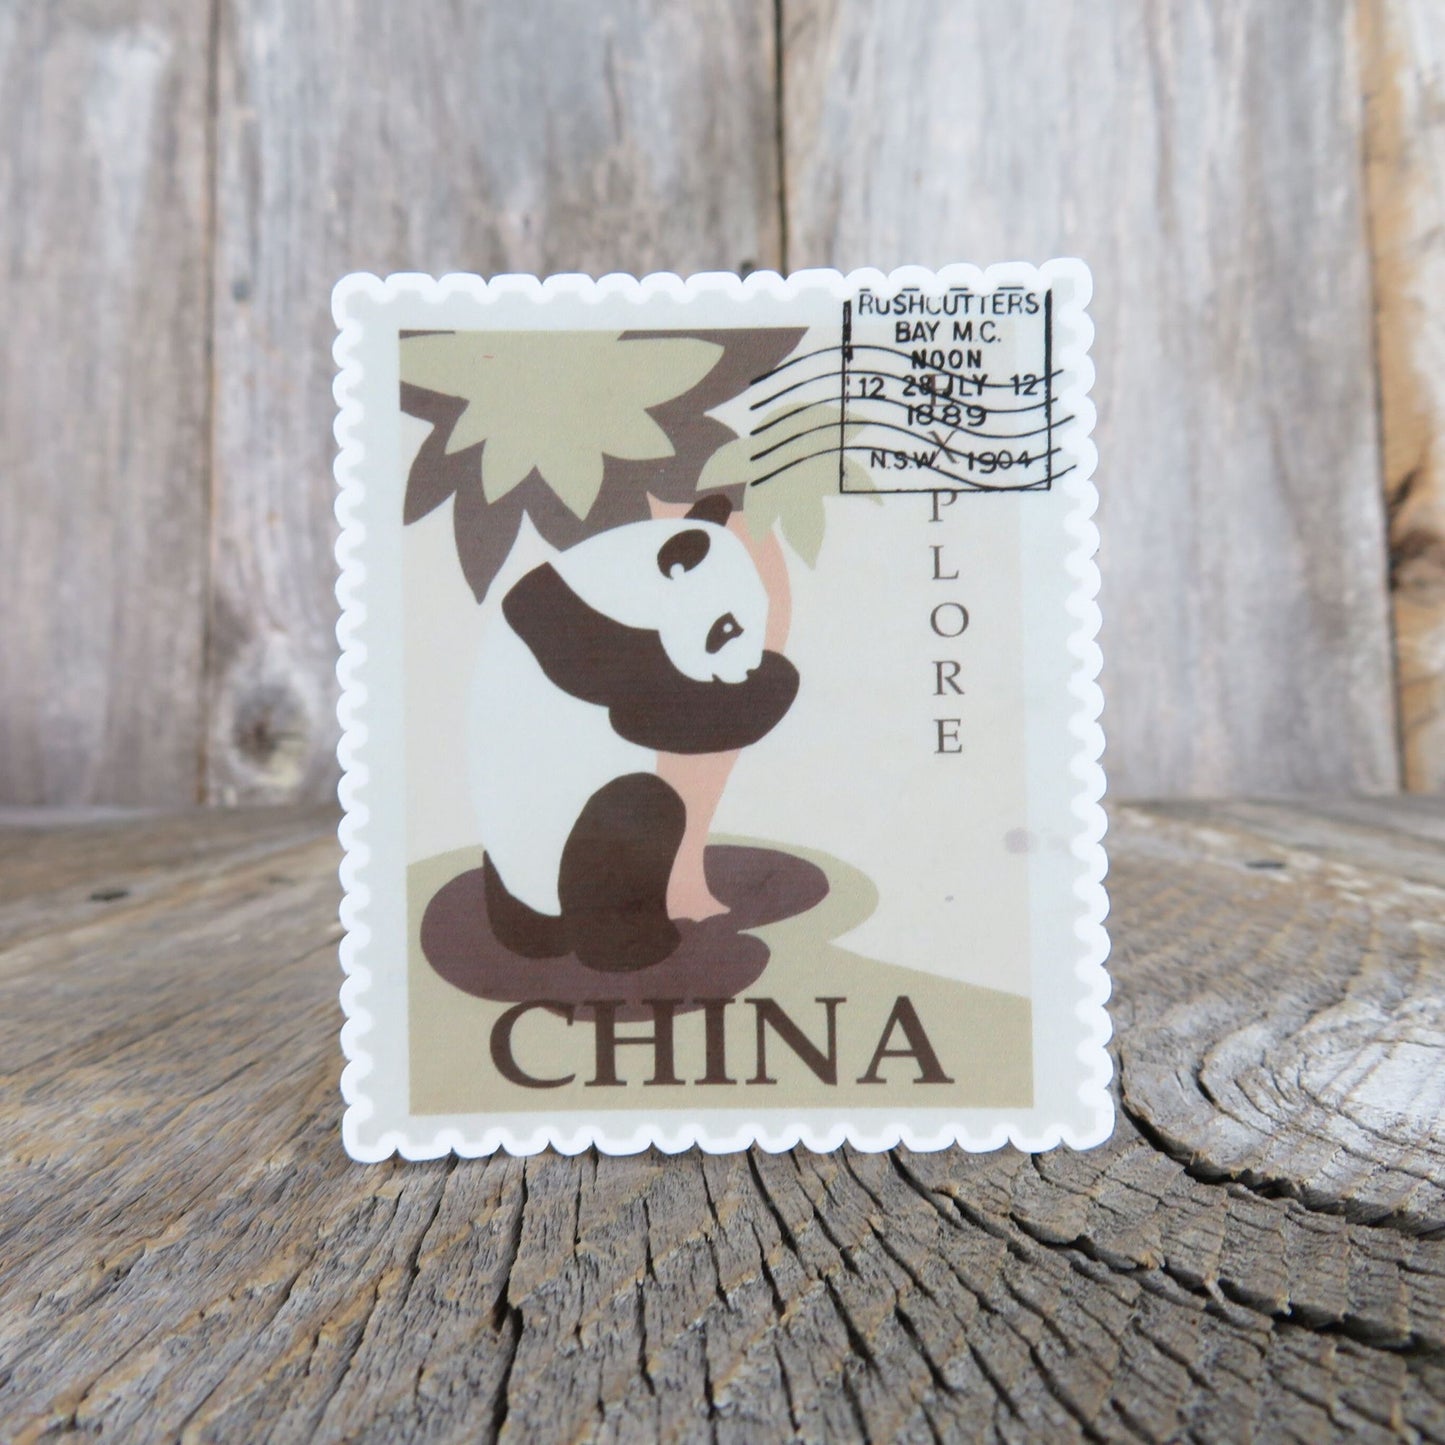 China Panda Bear Postage Stamp Sticker Waterproof Travel Souvenir Water Bottle Laptop